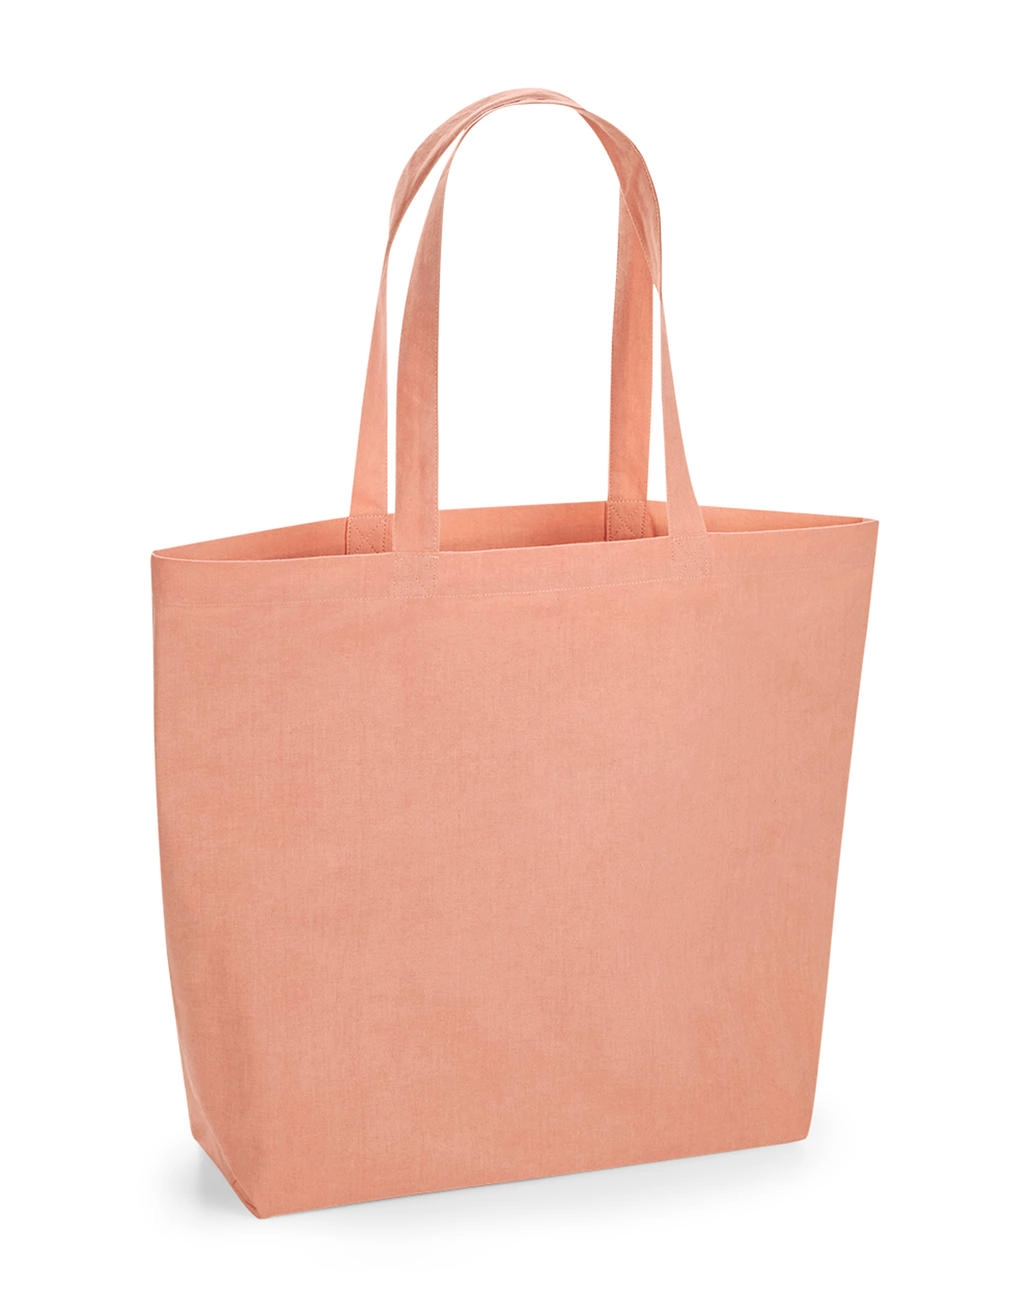 Organic Natural Dyed Maxi Bag for Life zum Besticken und Bedrucken mit Ihren Logo, Schriftzug oder Motiv.